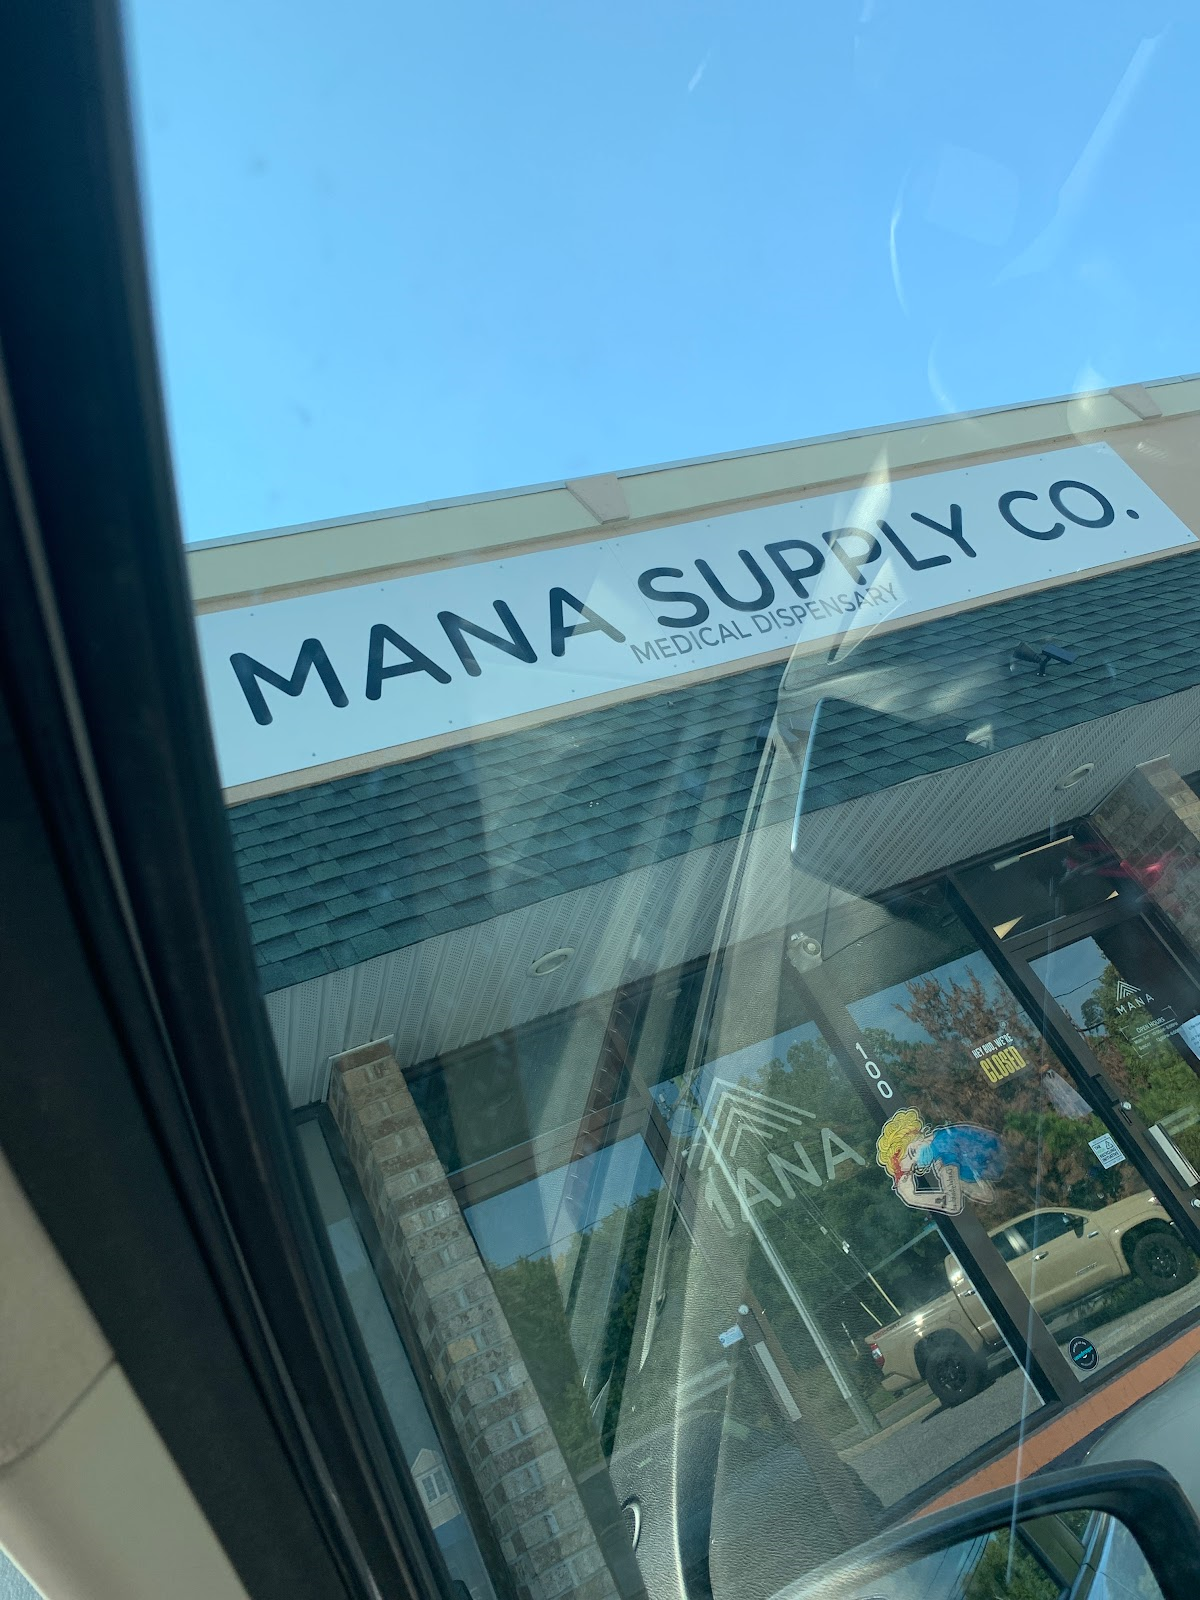 Mana Supply Company